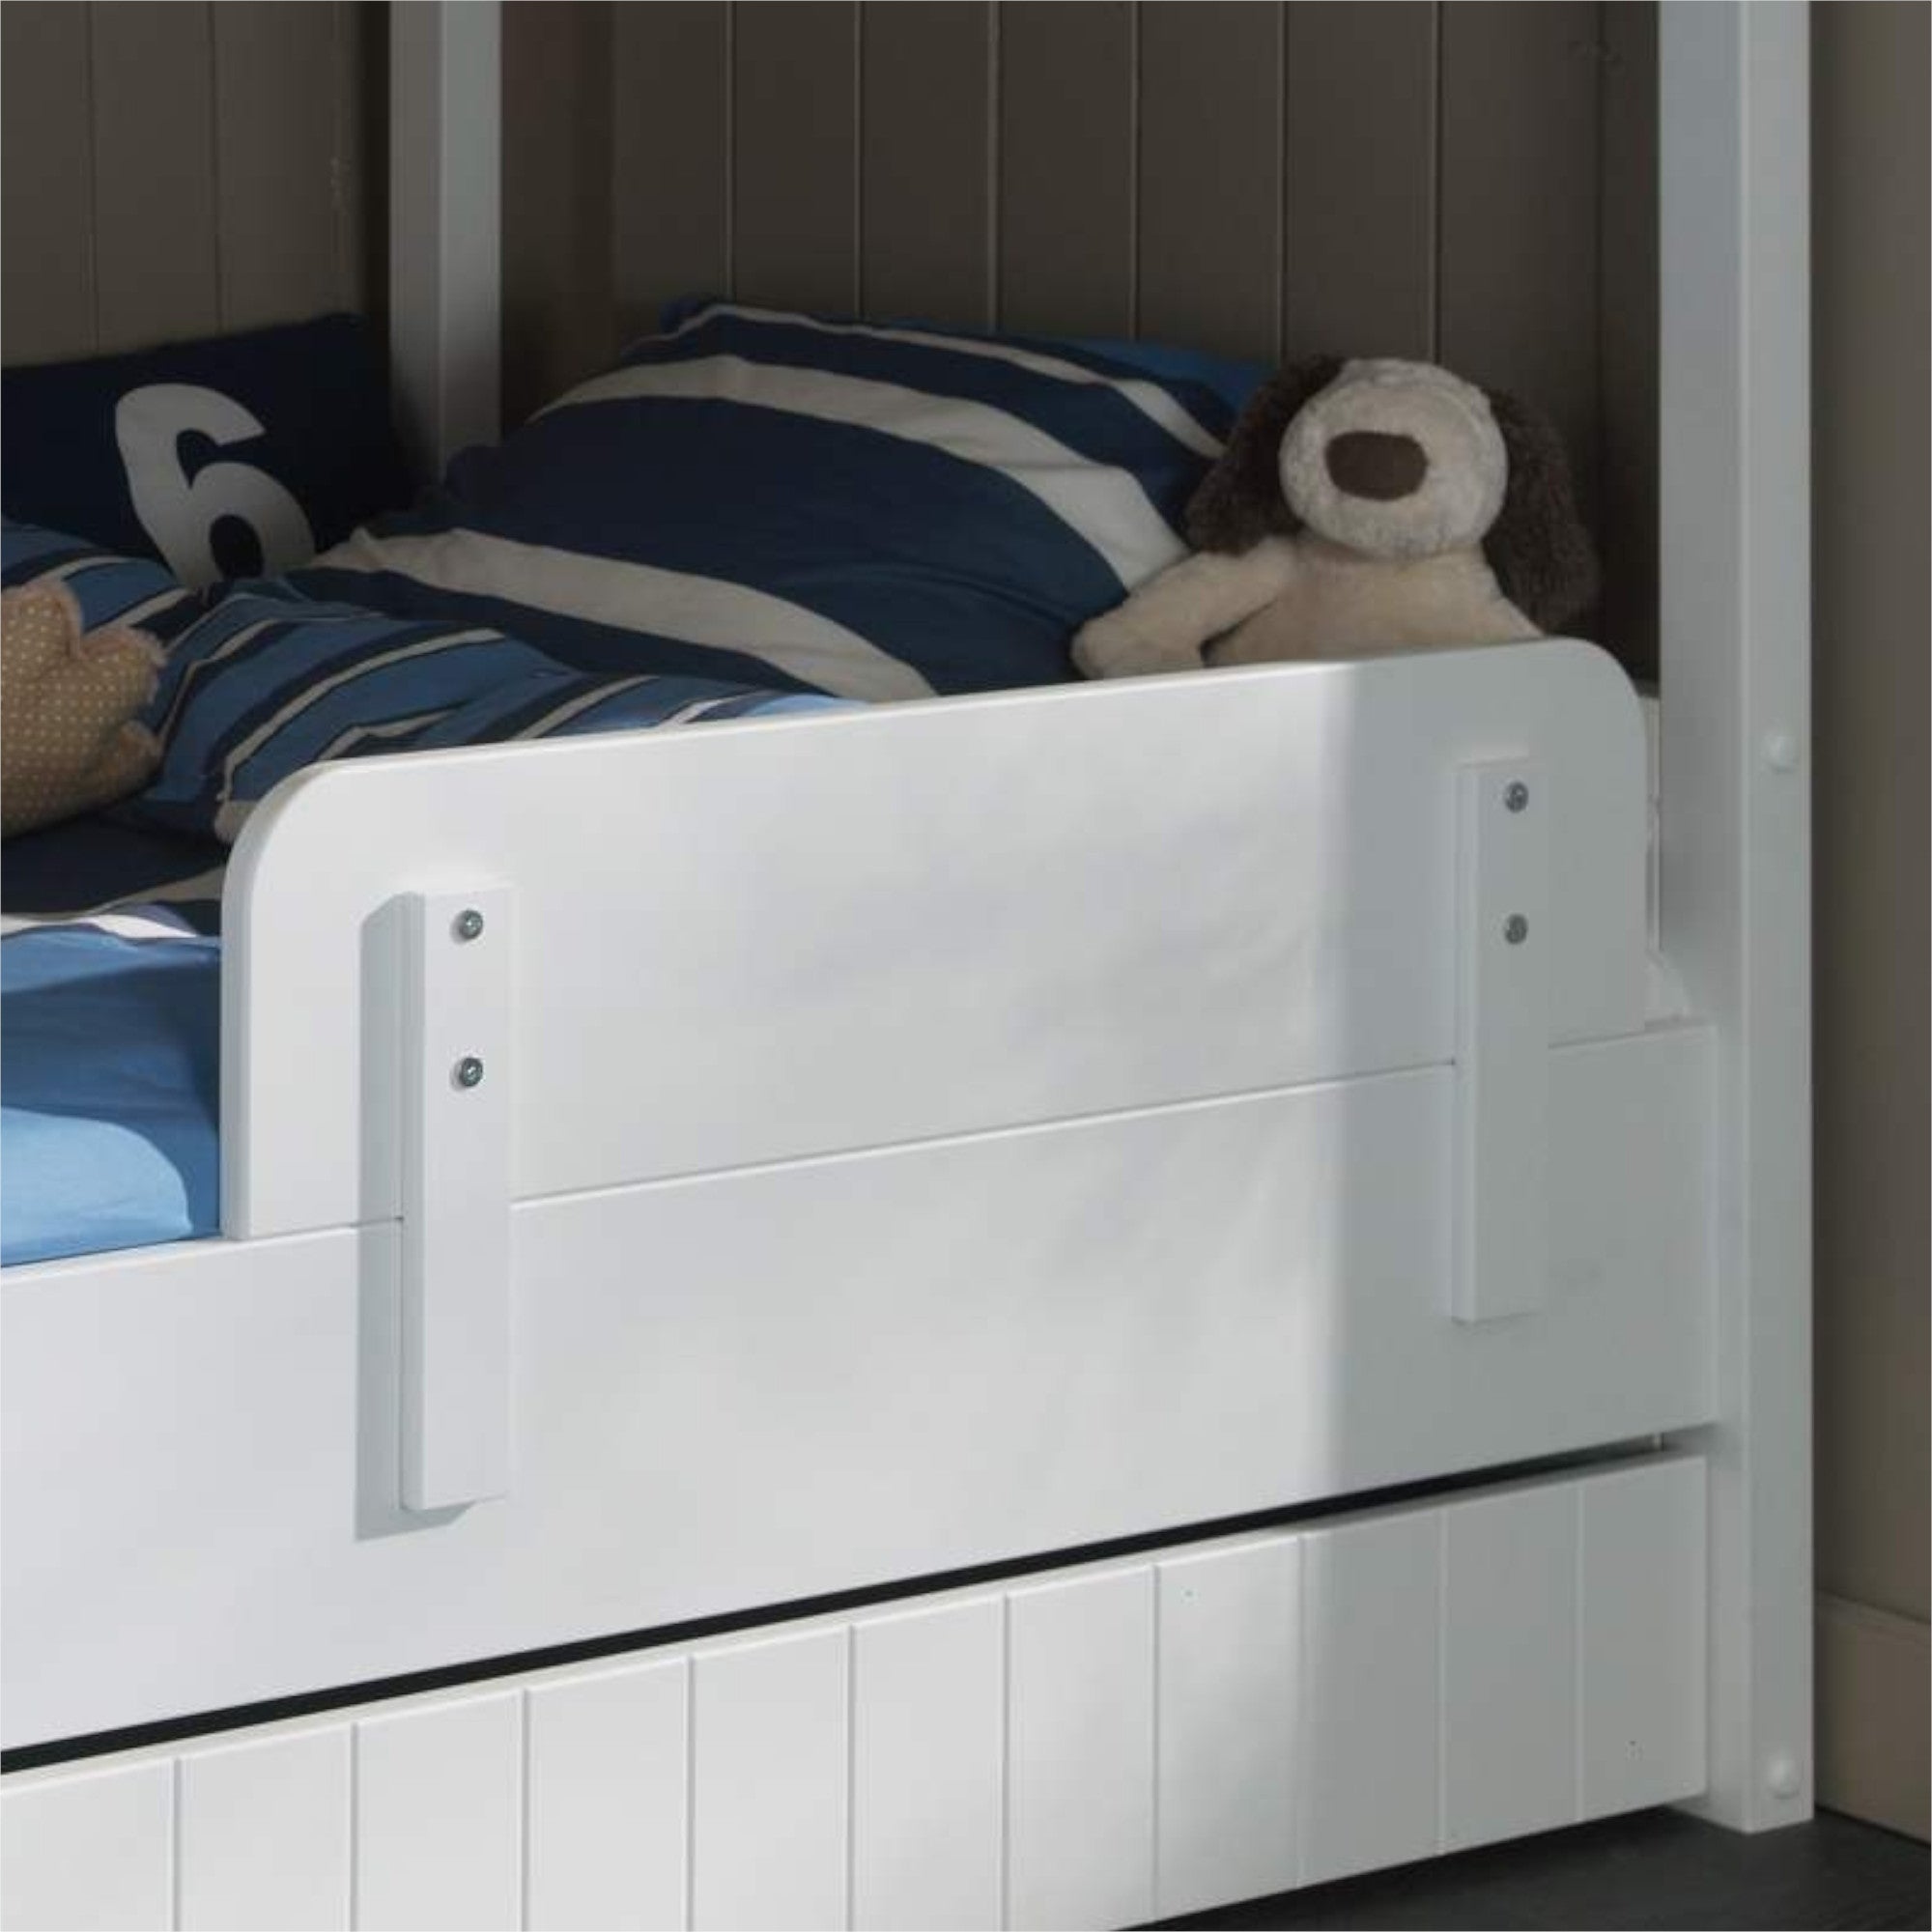 Absturzschutz Jean Vipack für Etagenbett aus hochwertigem MDF Holz weiß B: 90 cm H: 20 cm T: 2 cm